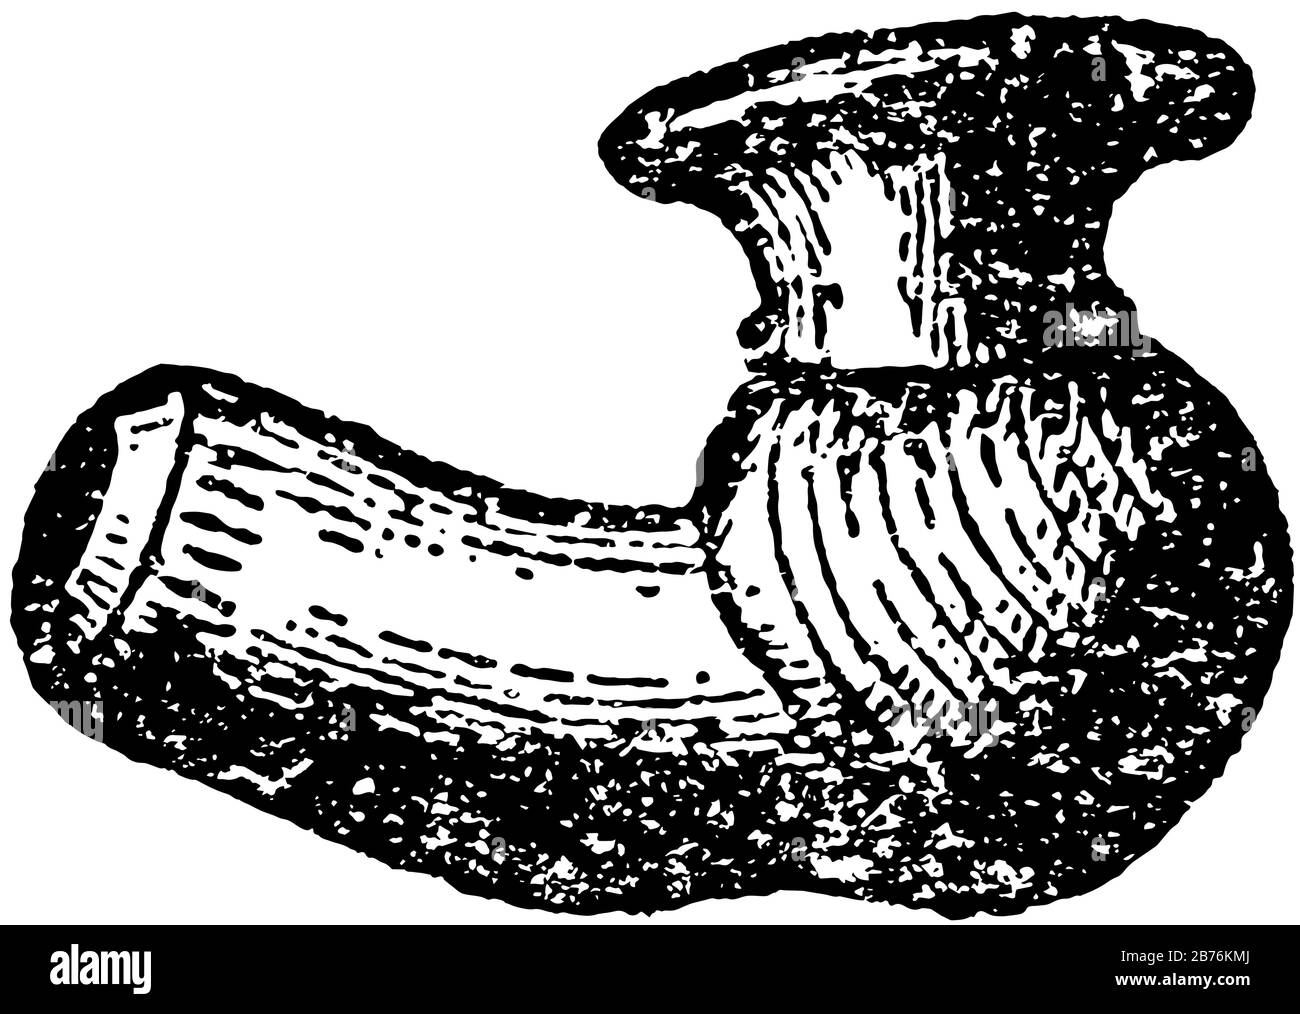 Clay Pipe Bowl sind rituelle Pfeifen, die bei Feierlichkeiten und im Alltag verwendet werden, Vintage-Line-Zeichnung oder Gravier-Illustration. Stock Vektor